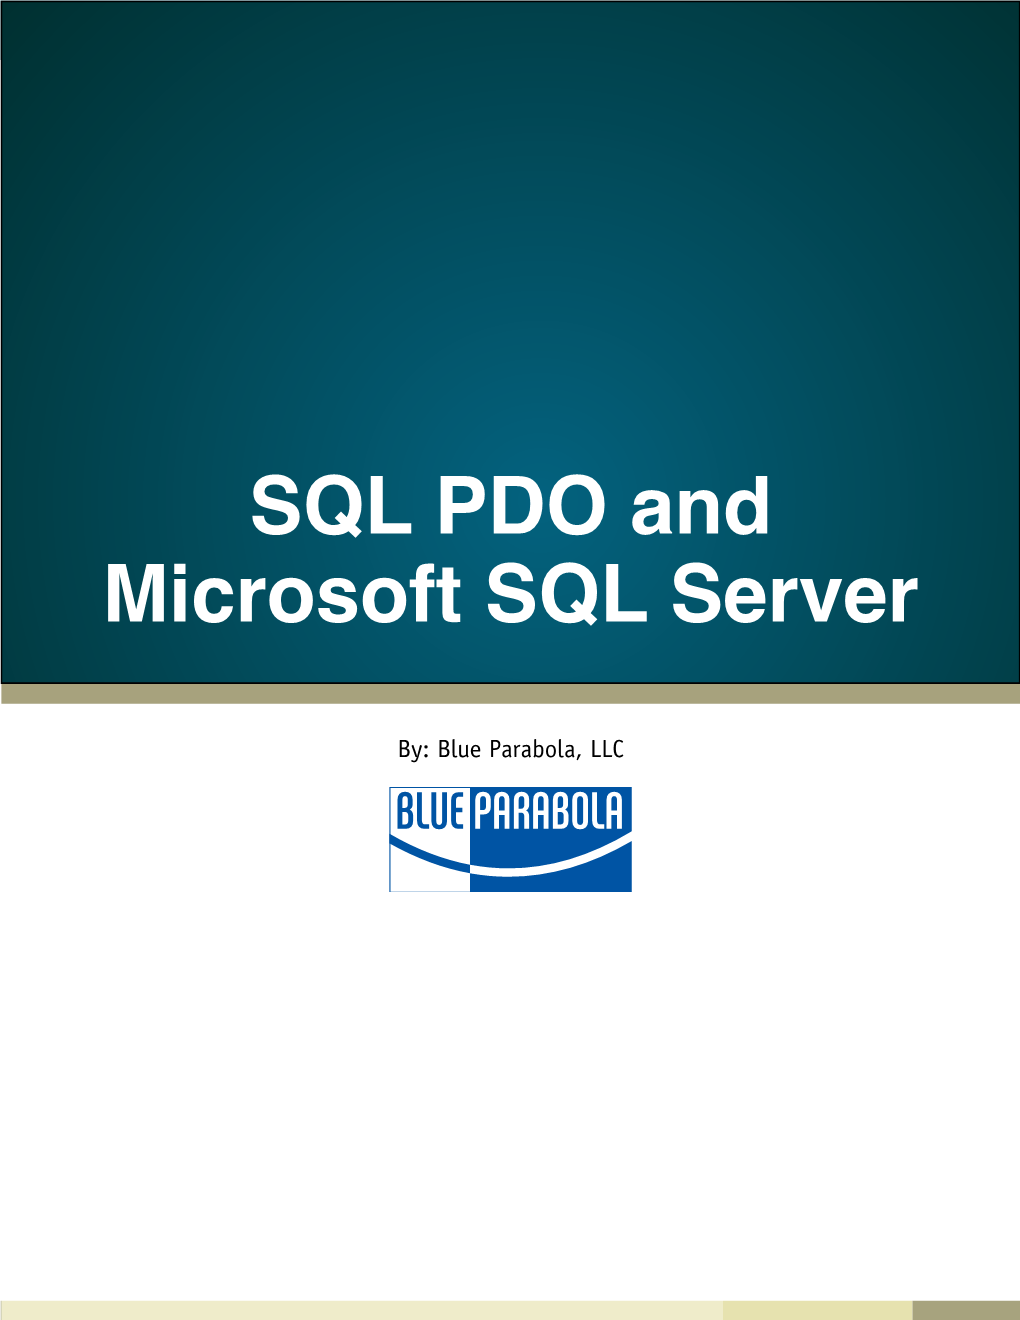 SQL PDO and Microsoft SQL Server